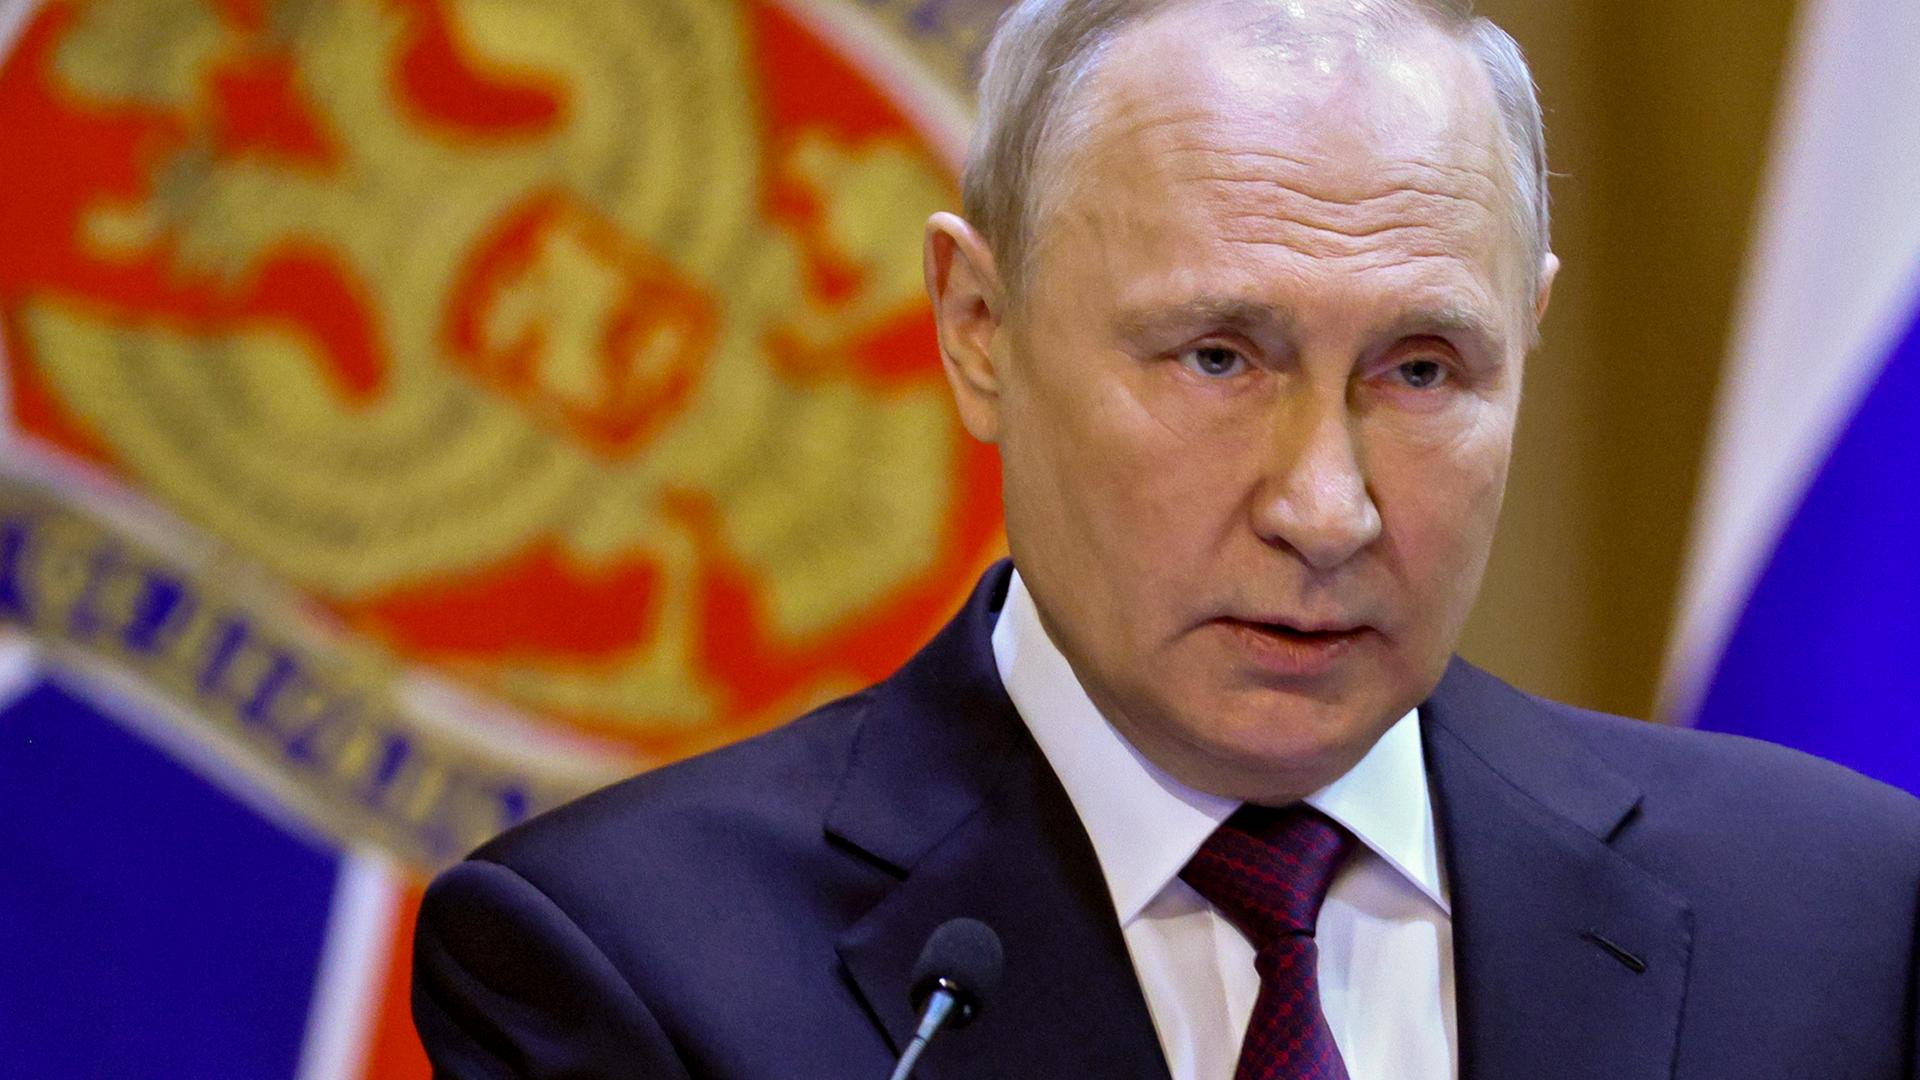 Der russische Präsident Putin hält eine Rede vor einer russischen Flagge.